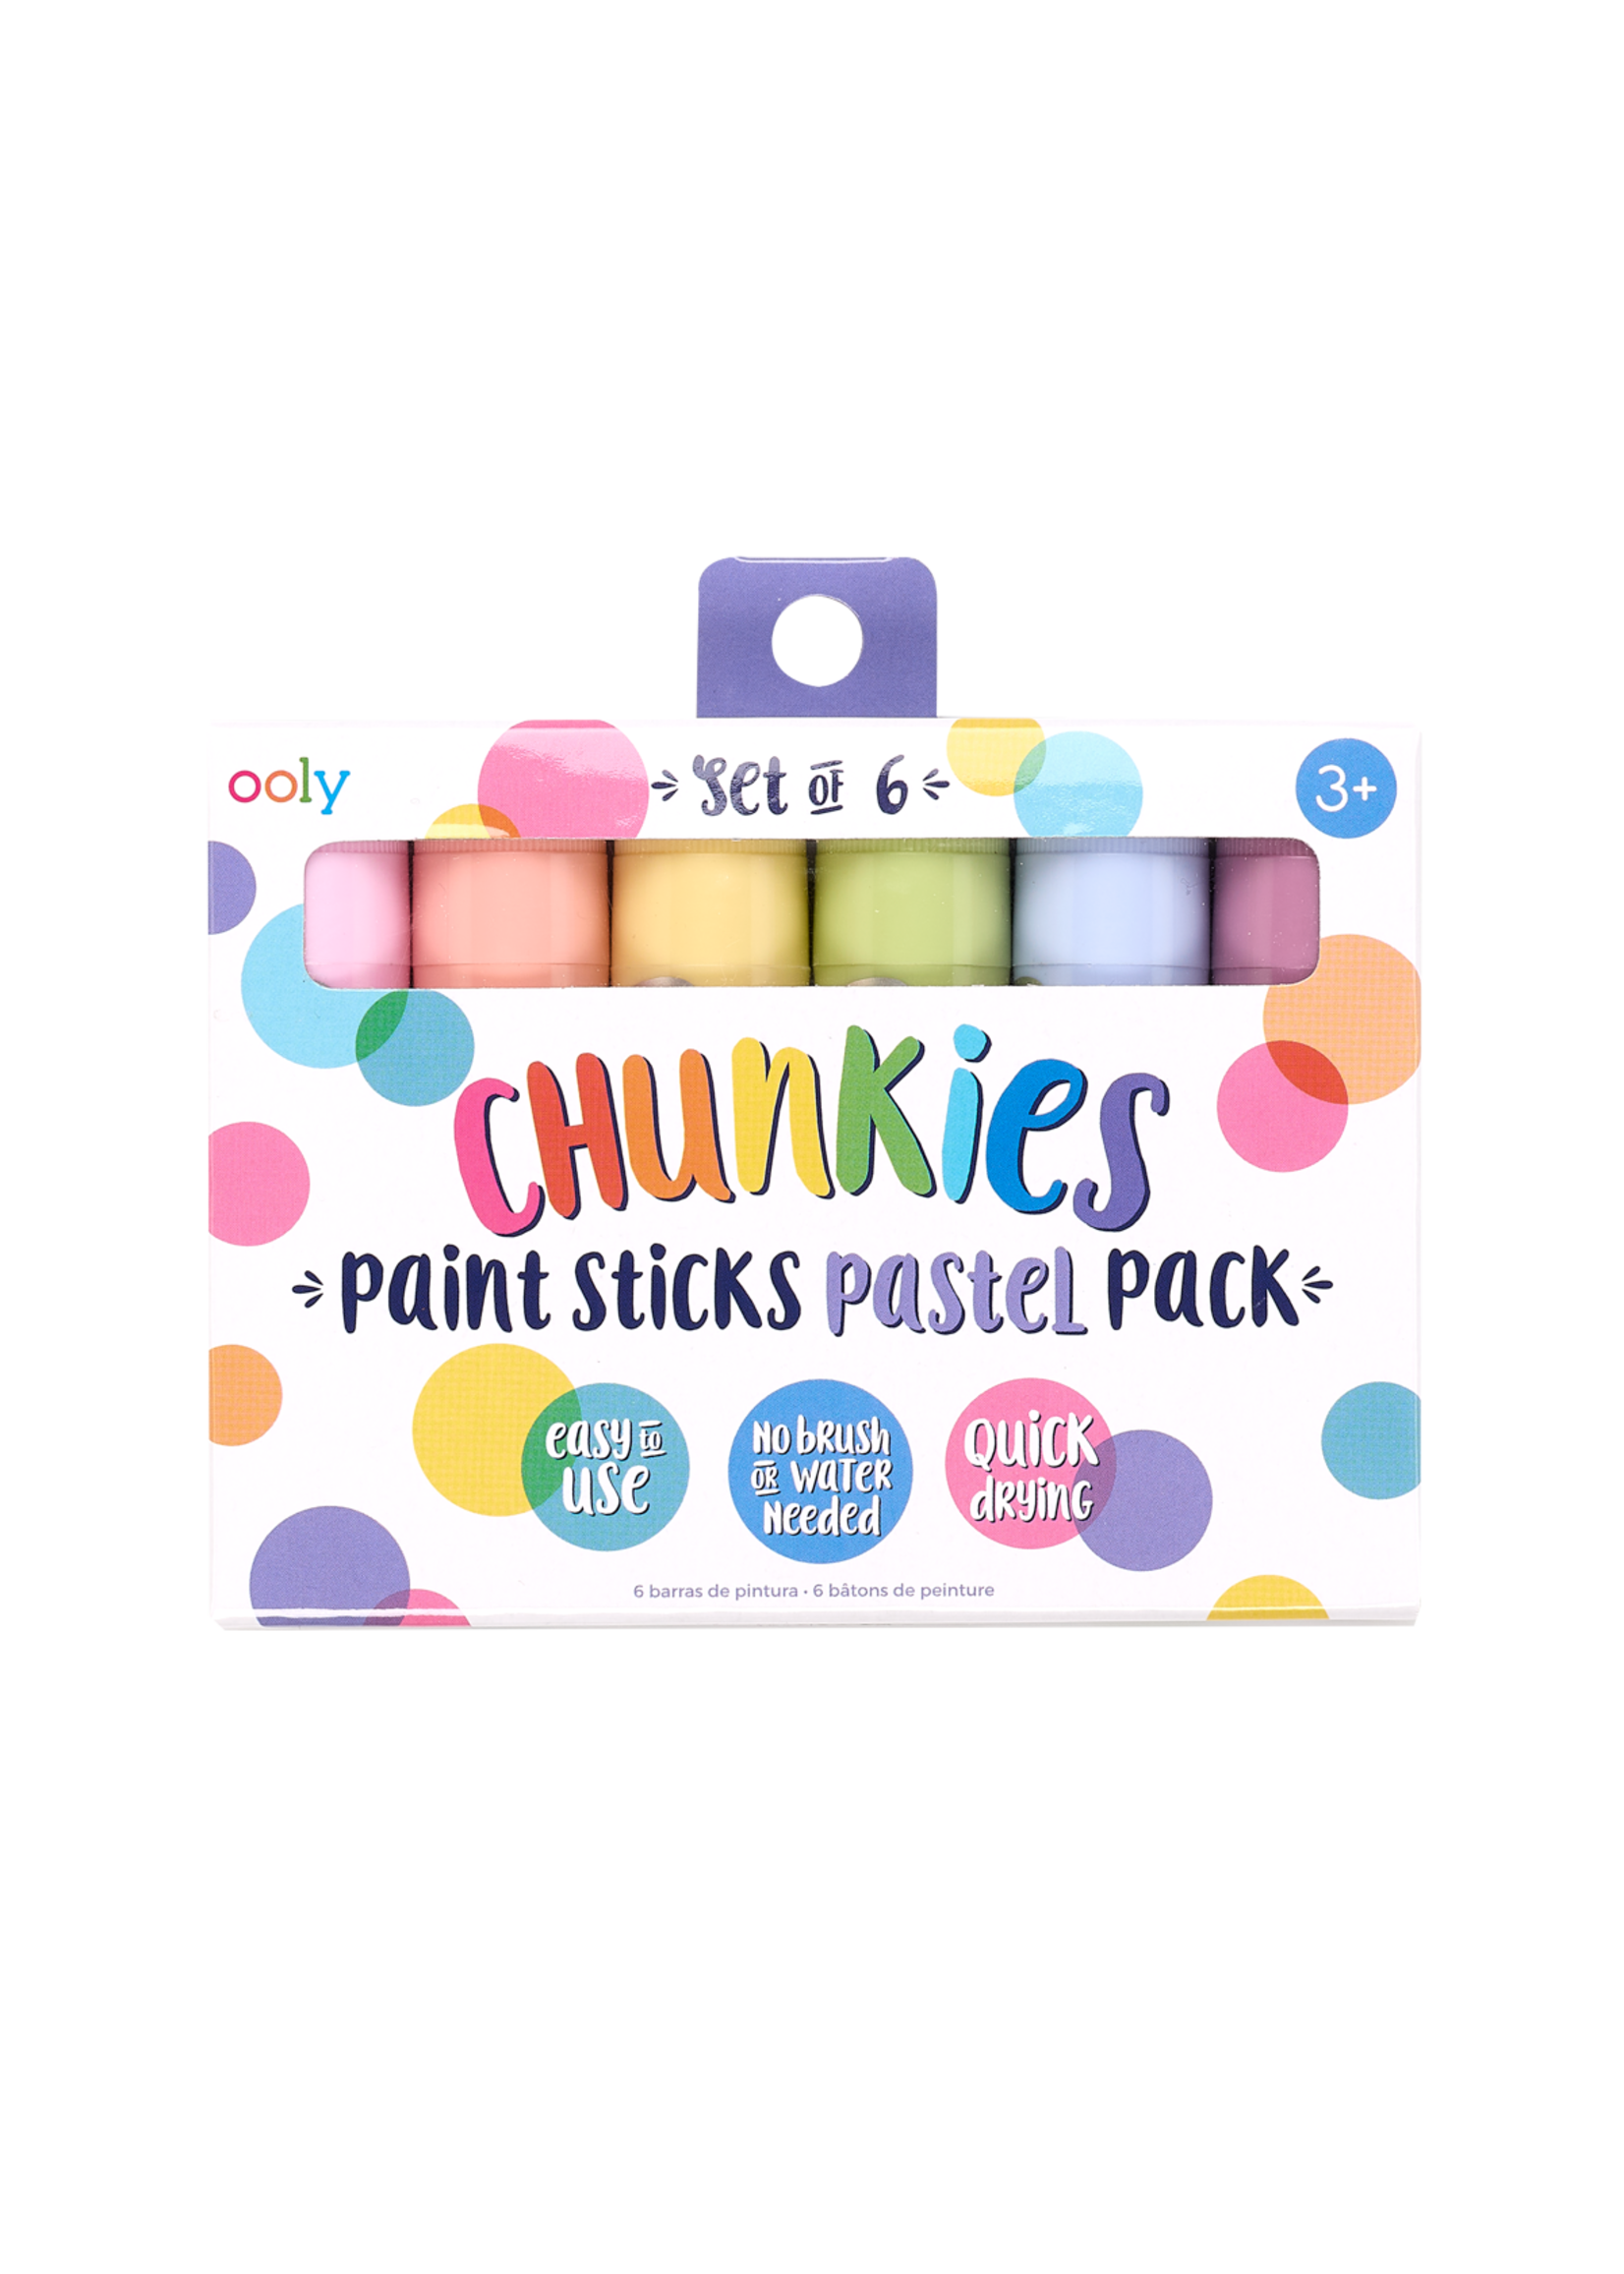 Ooly Chunkies Paint Sticks Pastel